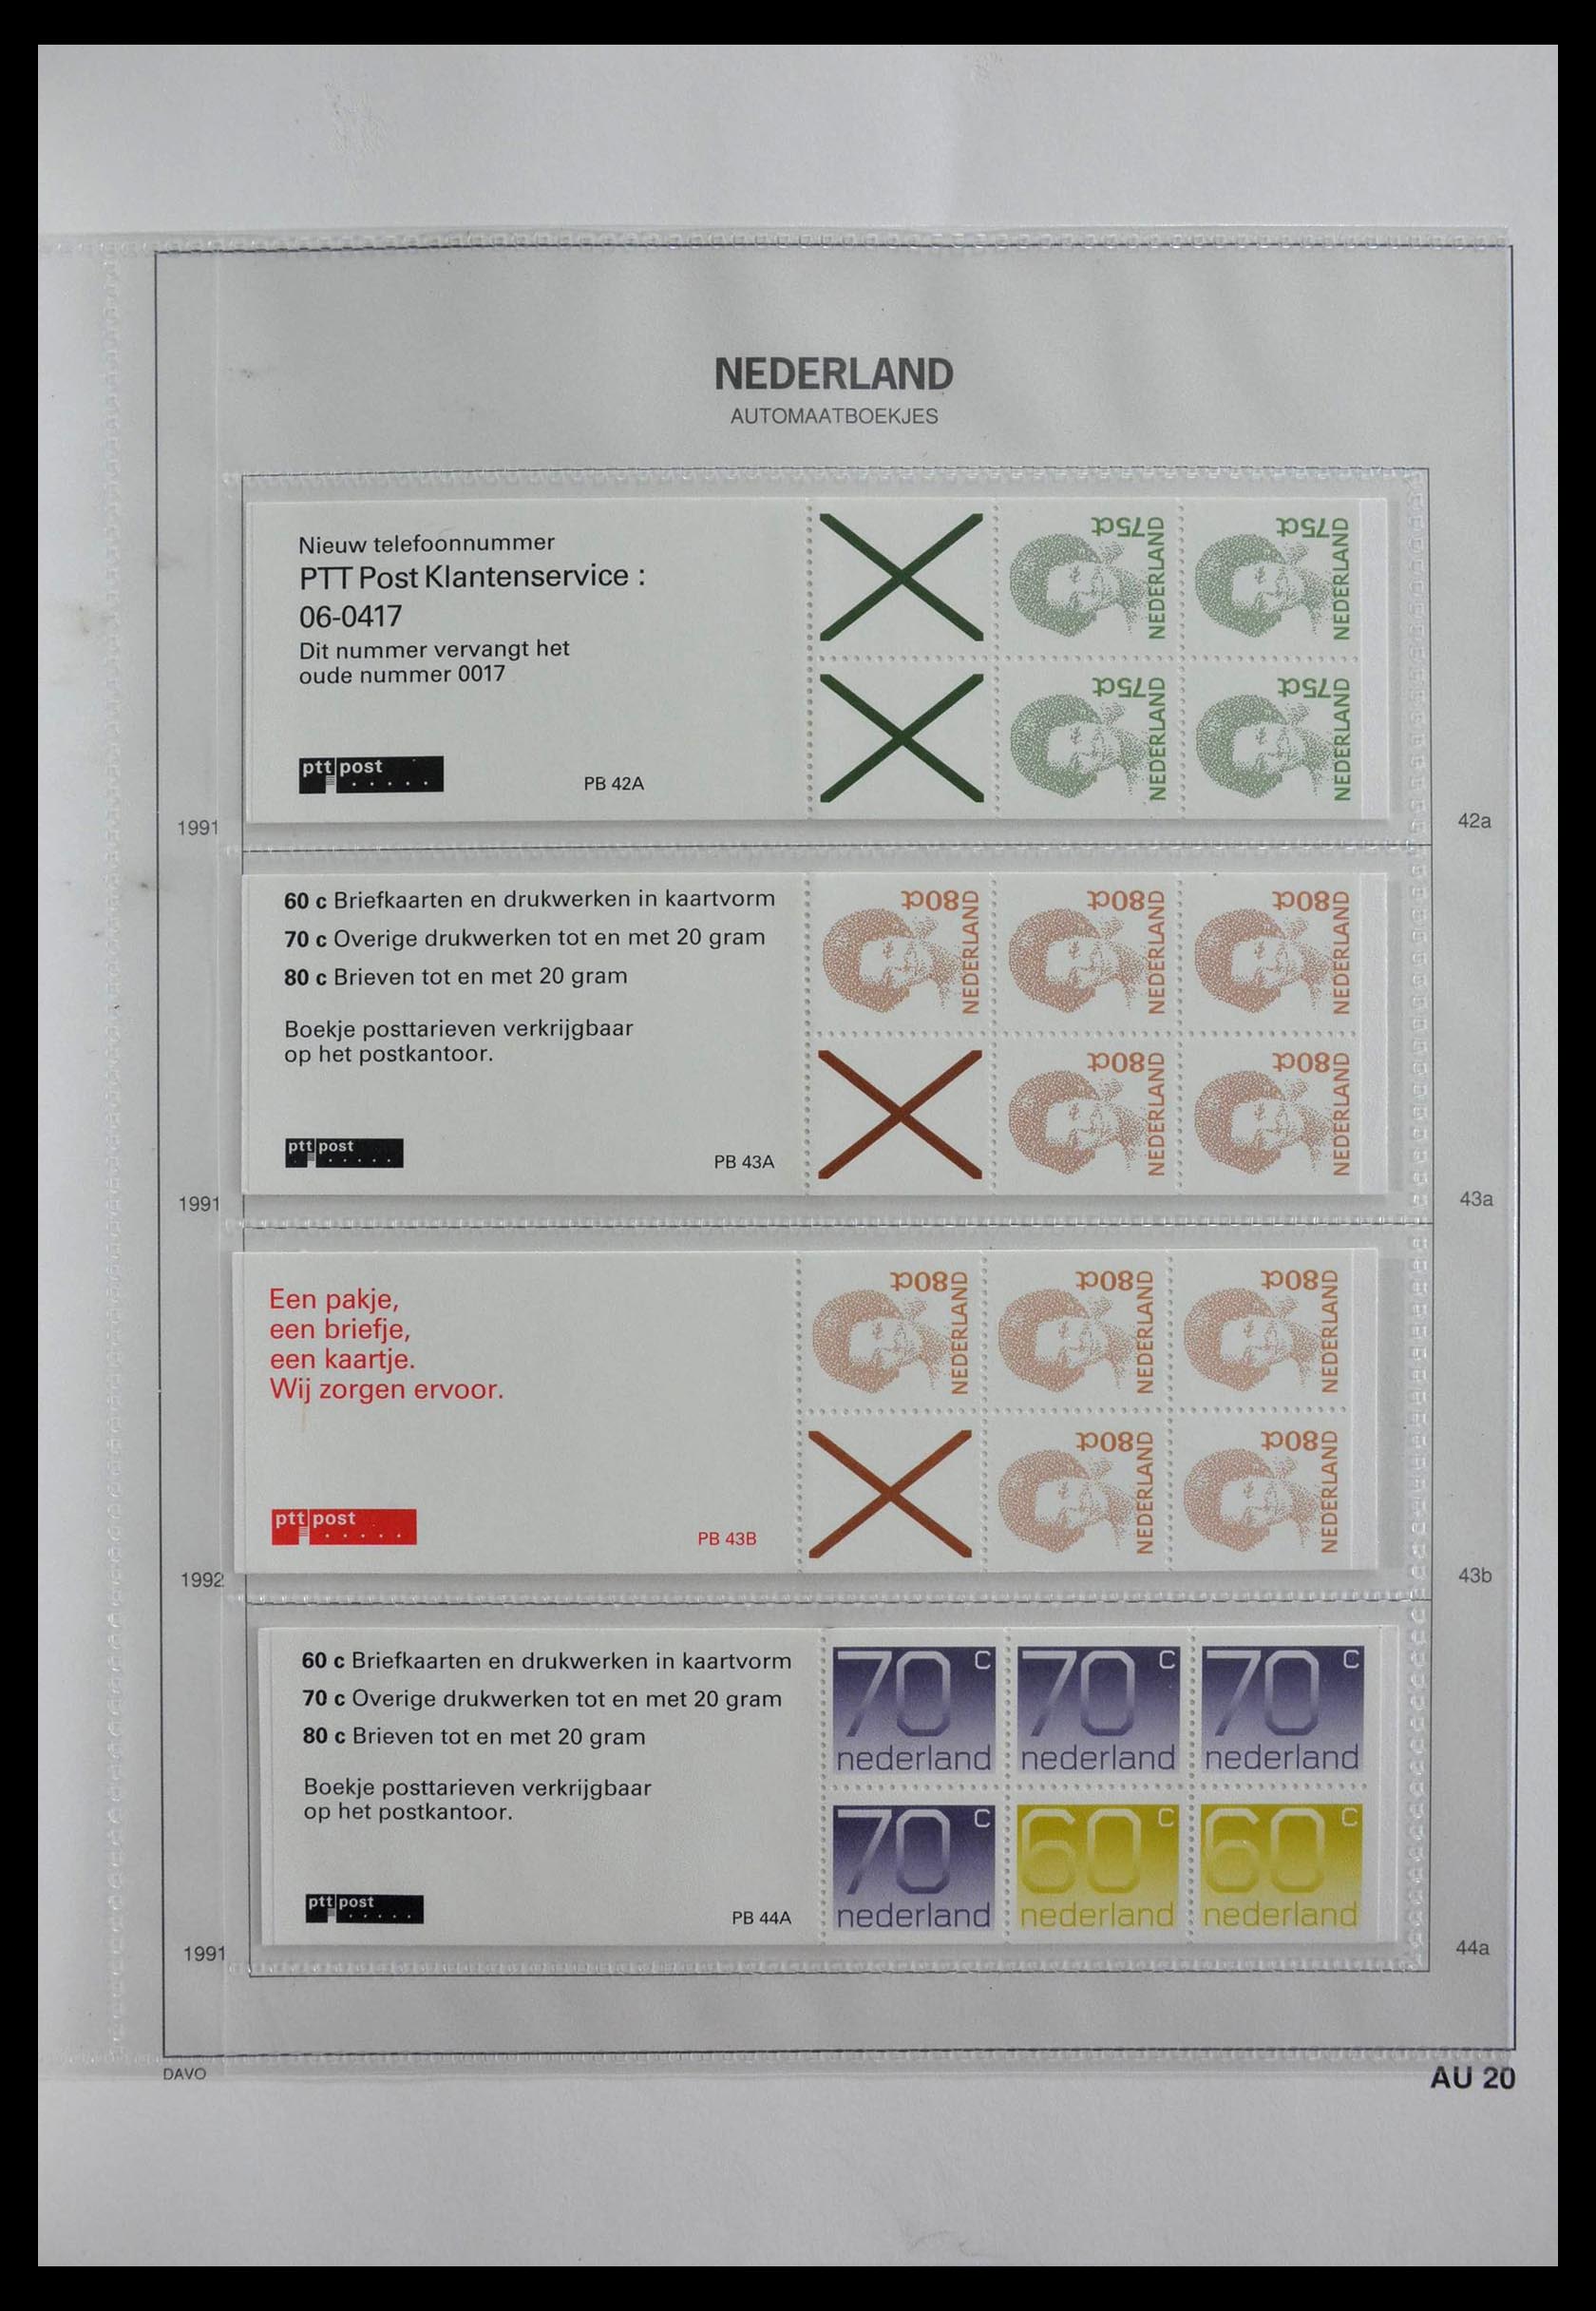 28853 020 - 28853 Netherlands stampbooklets 1964-2005.